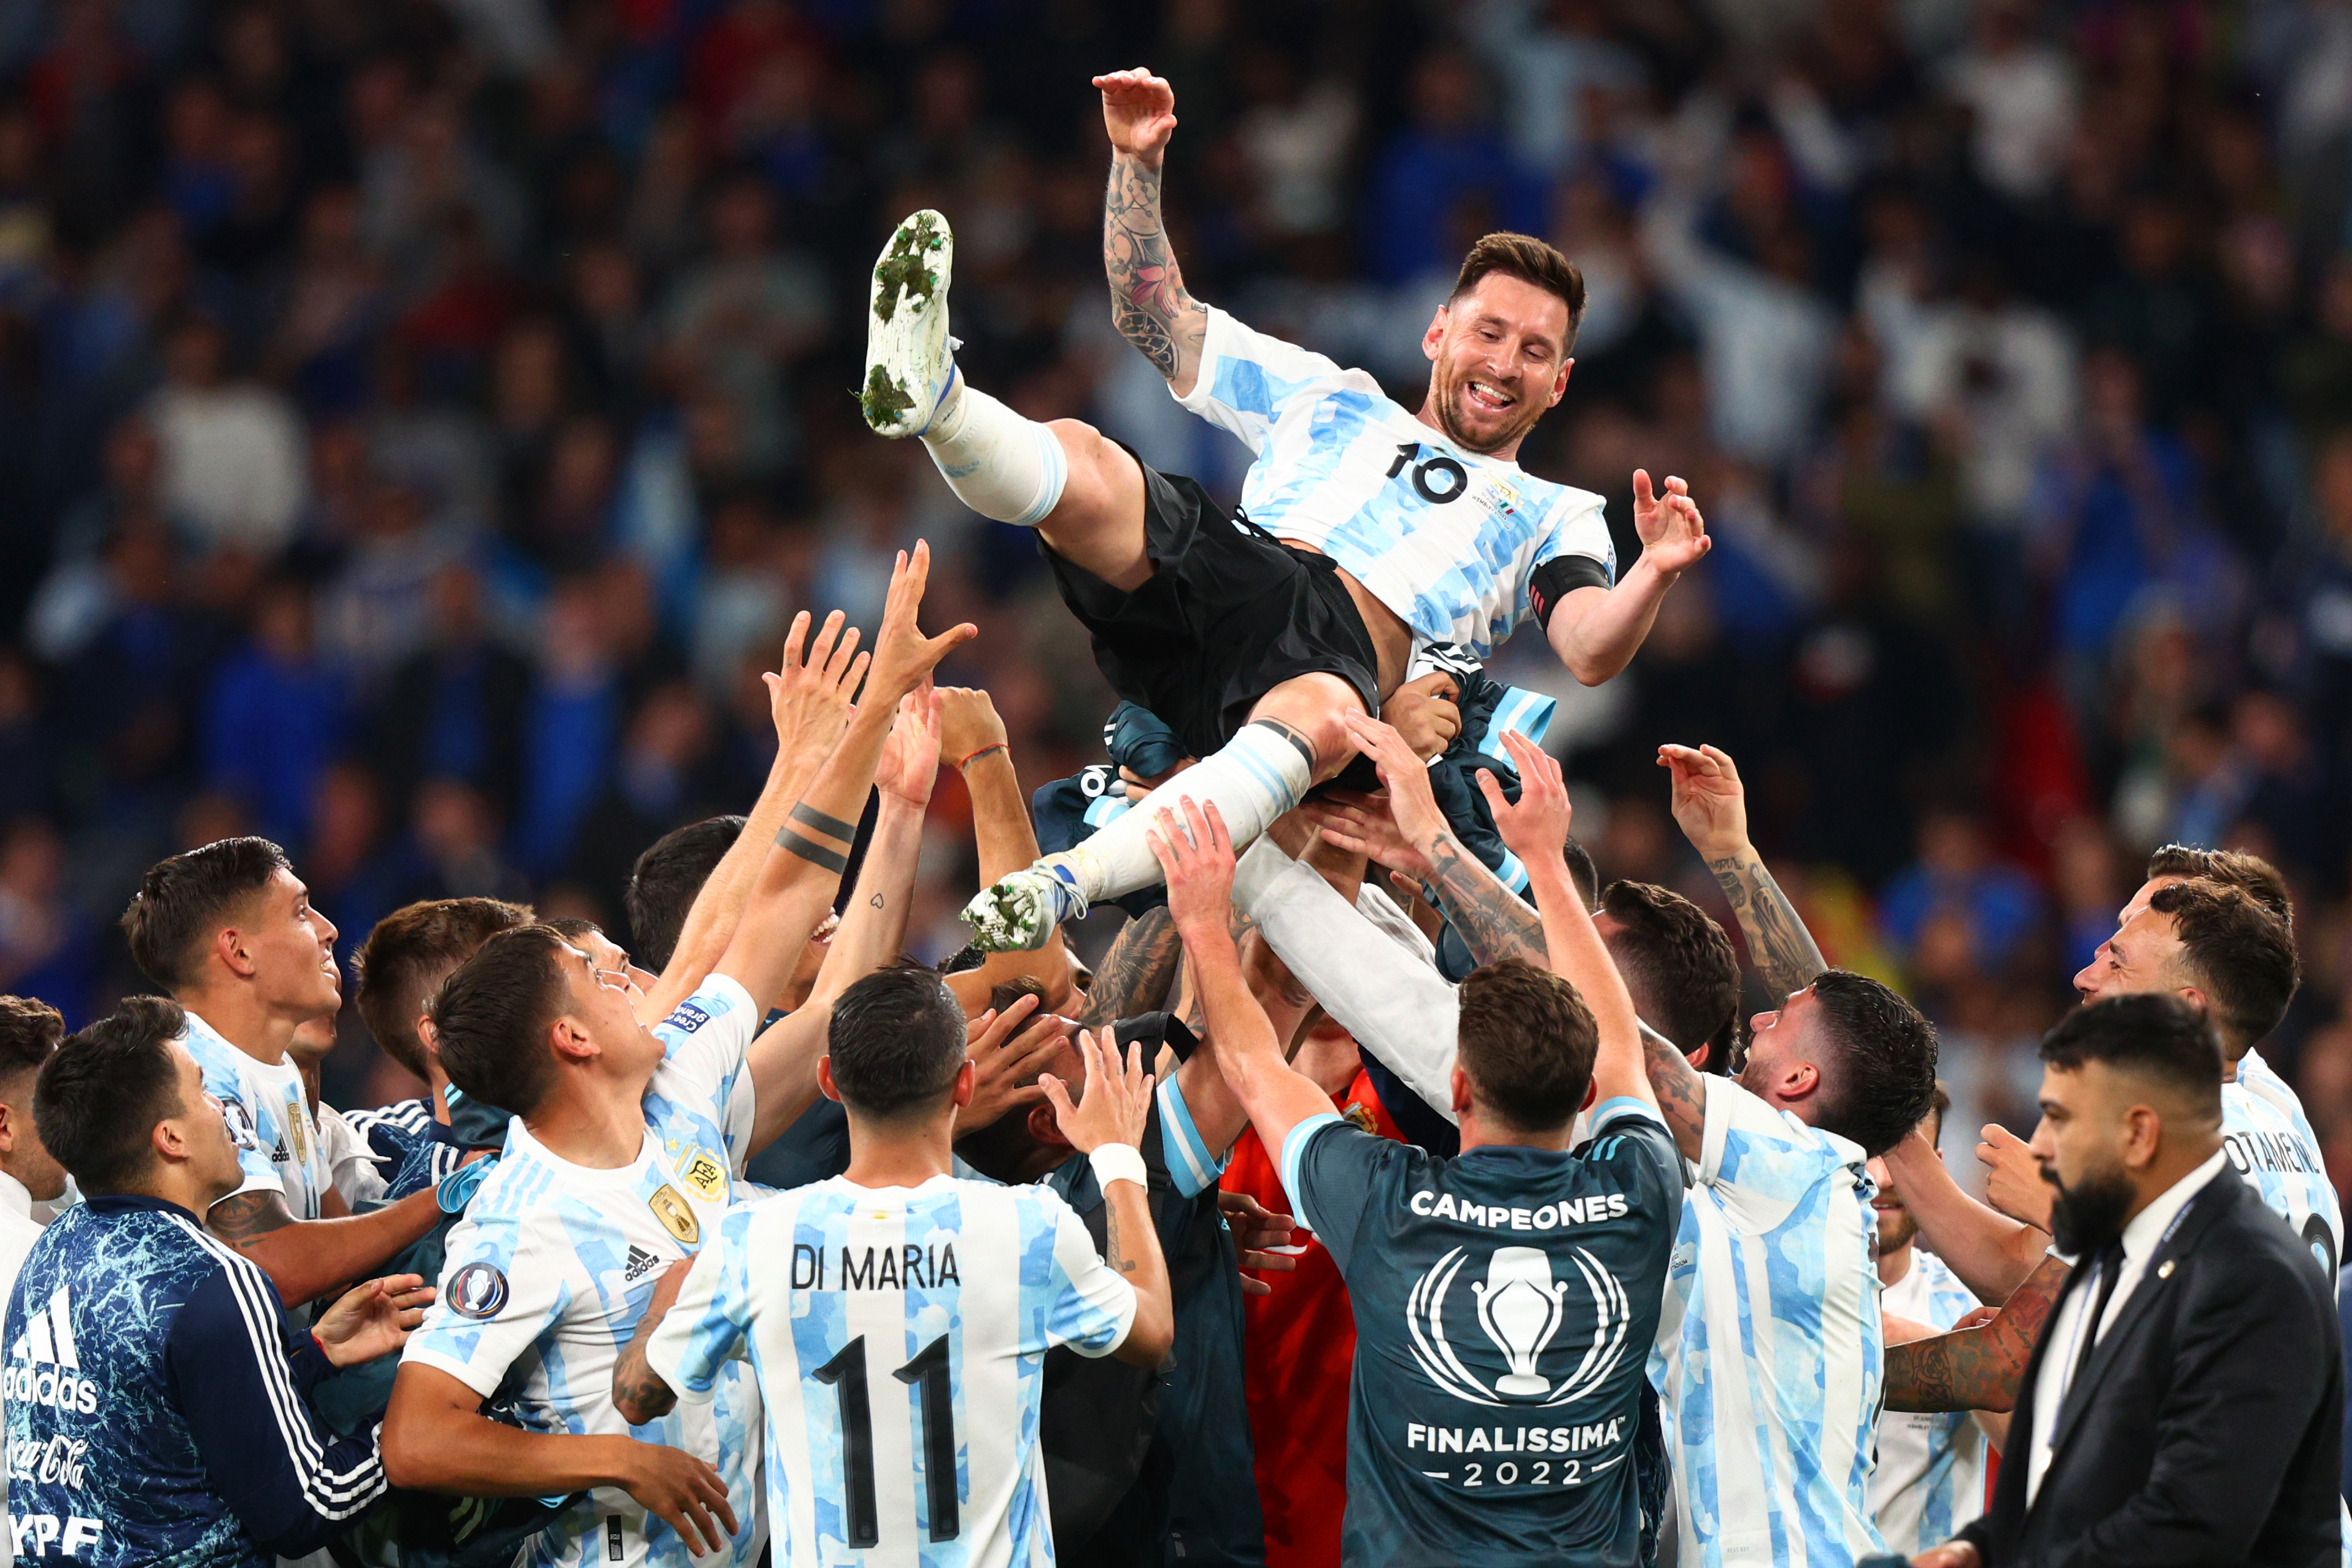 Hãy xem hình ảnh tuyệt đẹp về đội bóng Argentina và siêu sao Messi trong trận đấu cuối cùng - Finalissima! Đội tuyển của họ đã có một mùa giải ngoạn mục và bạn không muốn bỏ lỡ cơ hội tận hưởng những khoảnh khắc tuyệt vời đó.